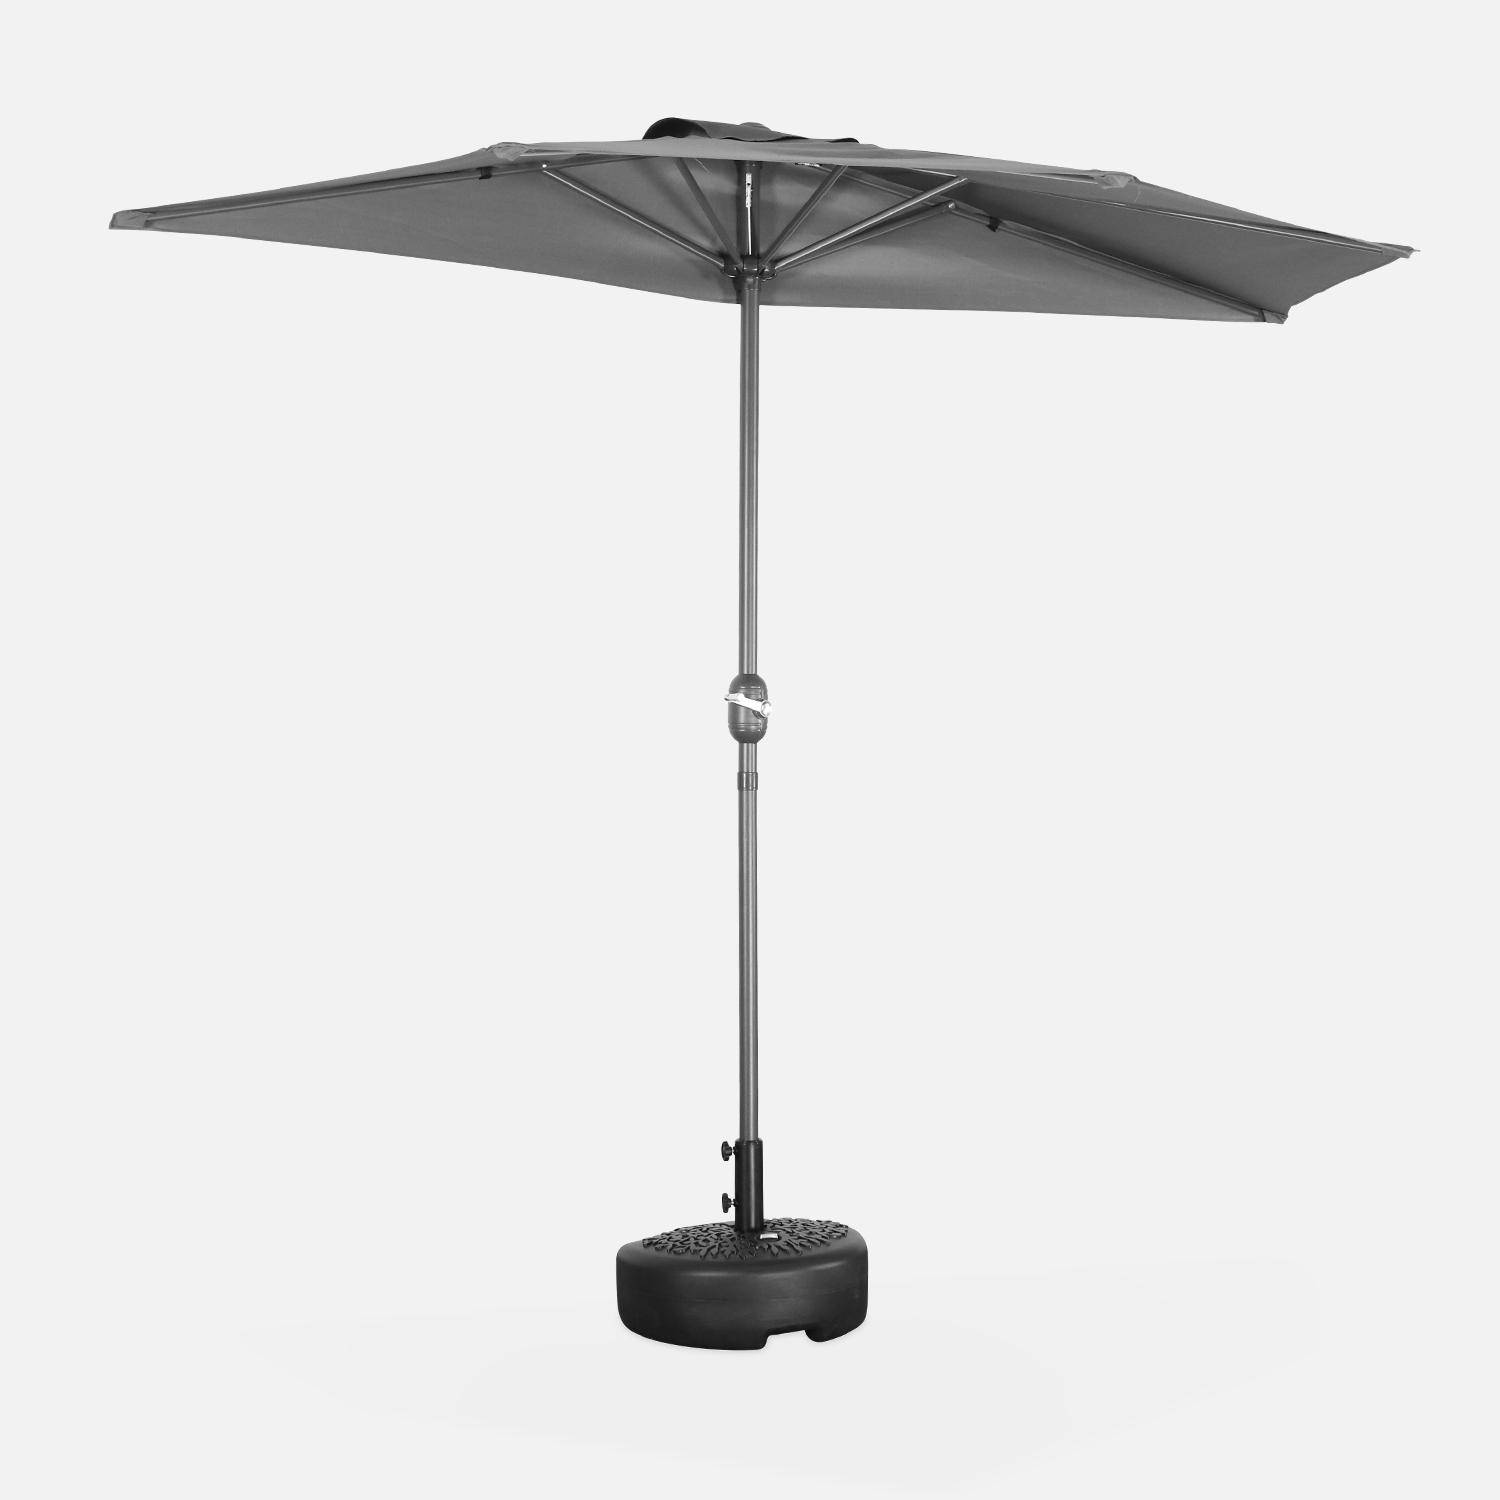  Parasol para balcón Ø250cm - CALVI - Medio parasol recto, mástil de aluminio con manivela, tejido gris,sweeek,Photo2